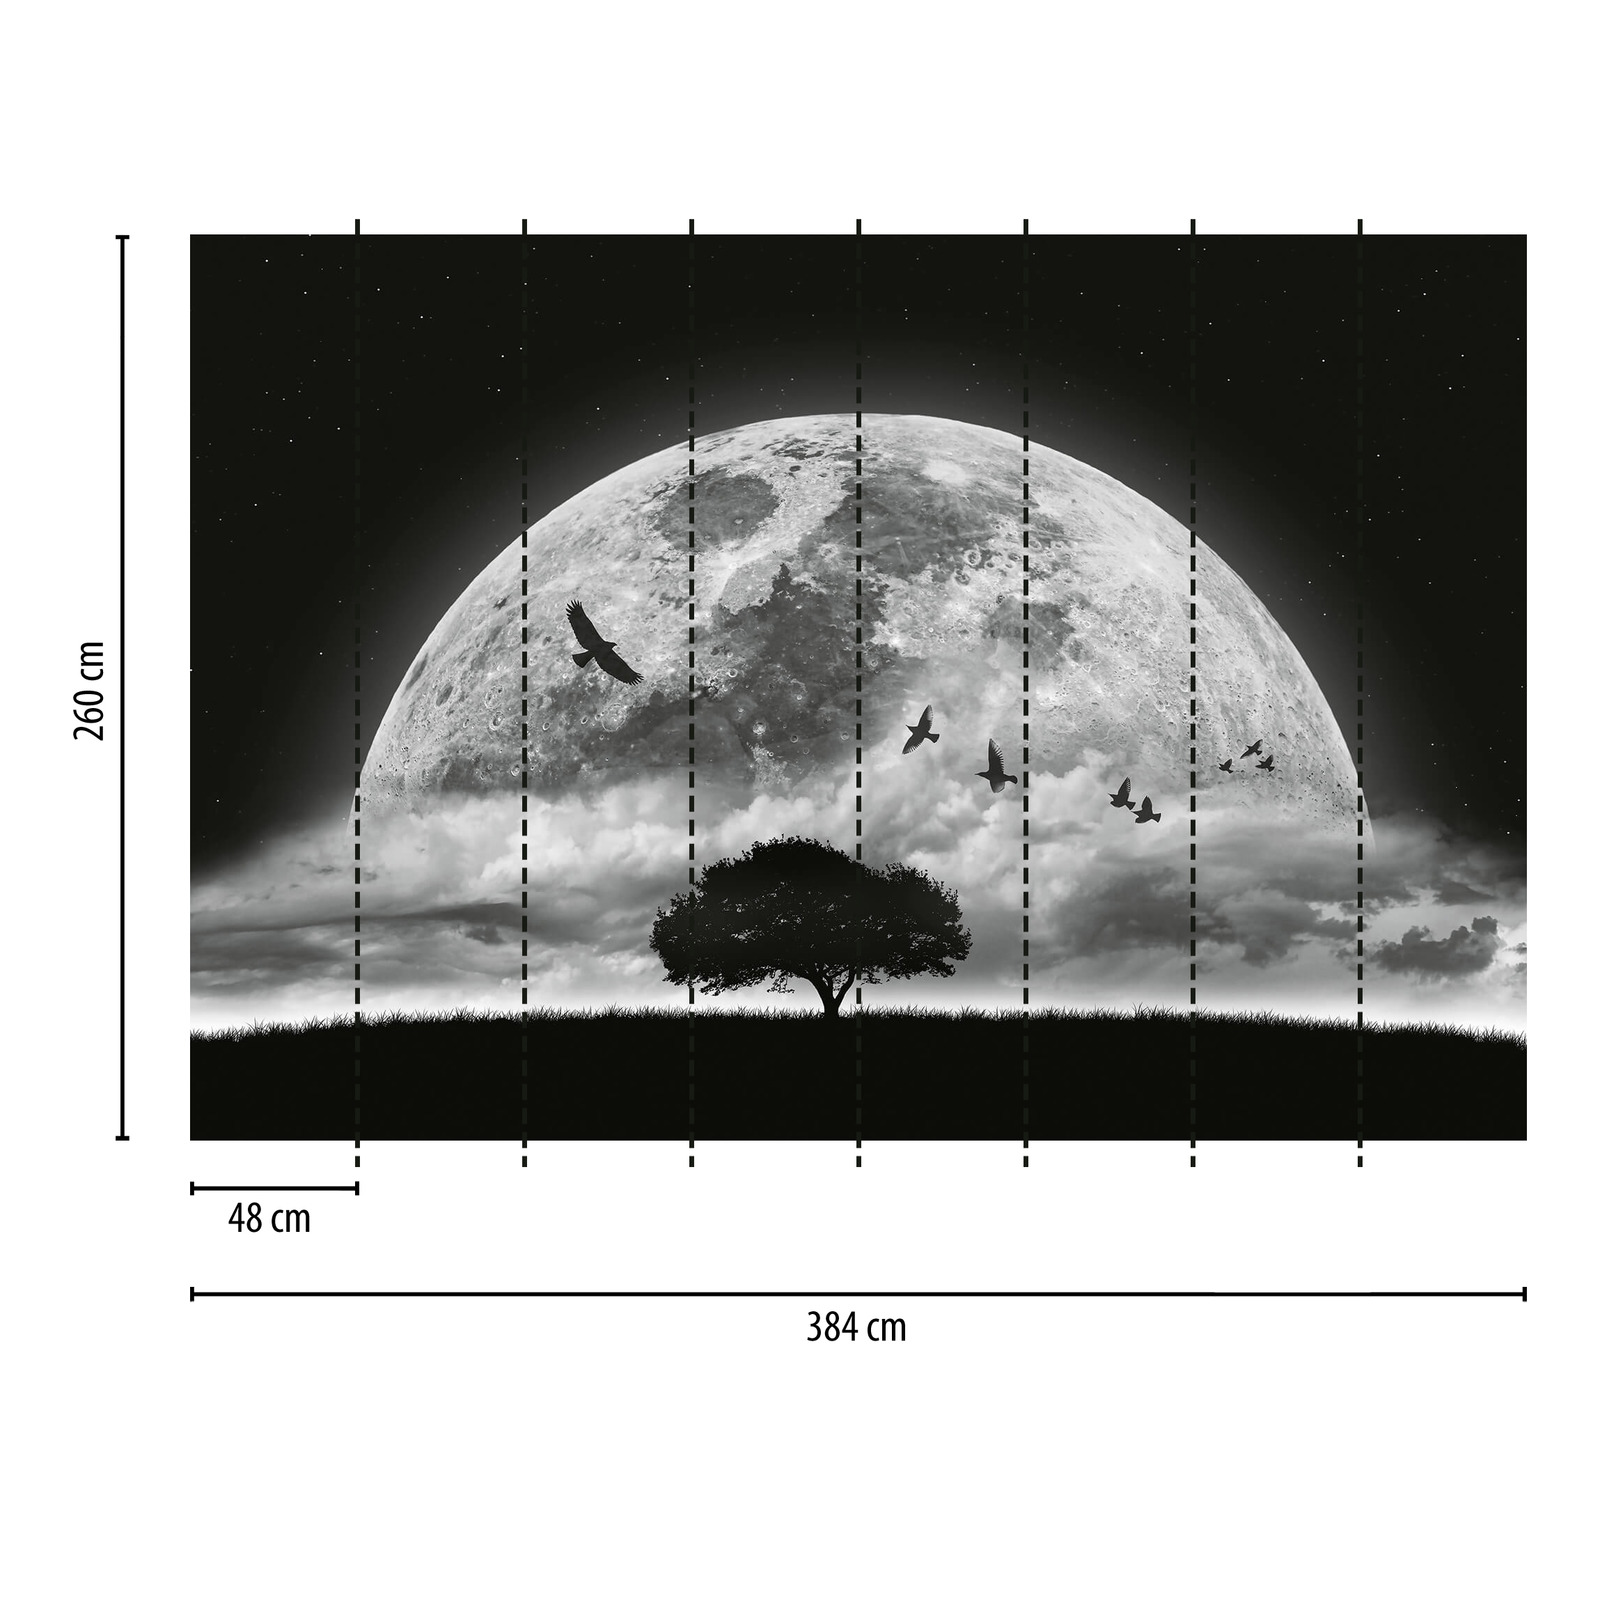             Fototapete Mond und Vögel – Schwarz, Weiß
        